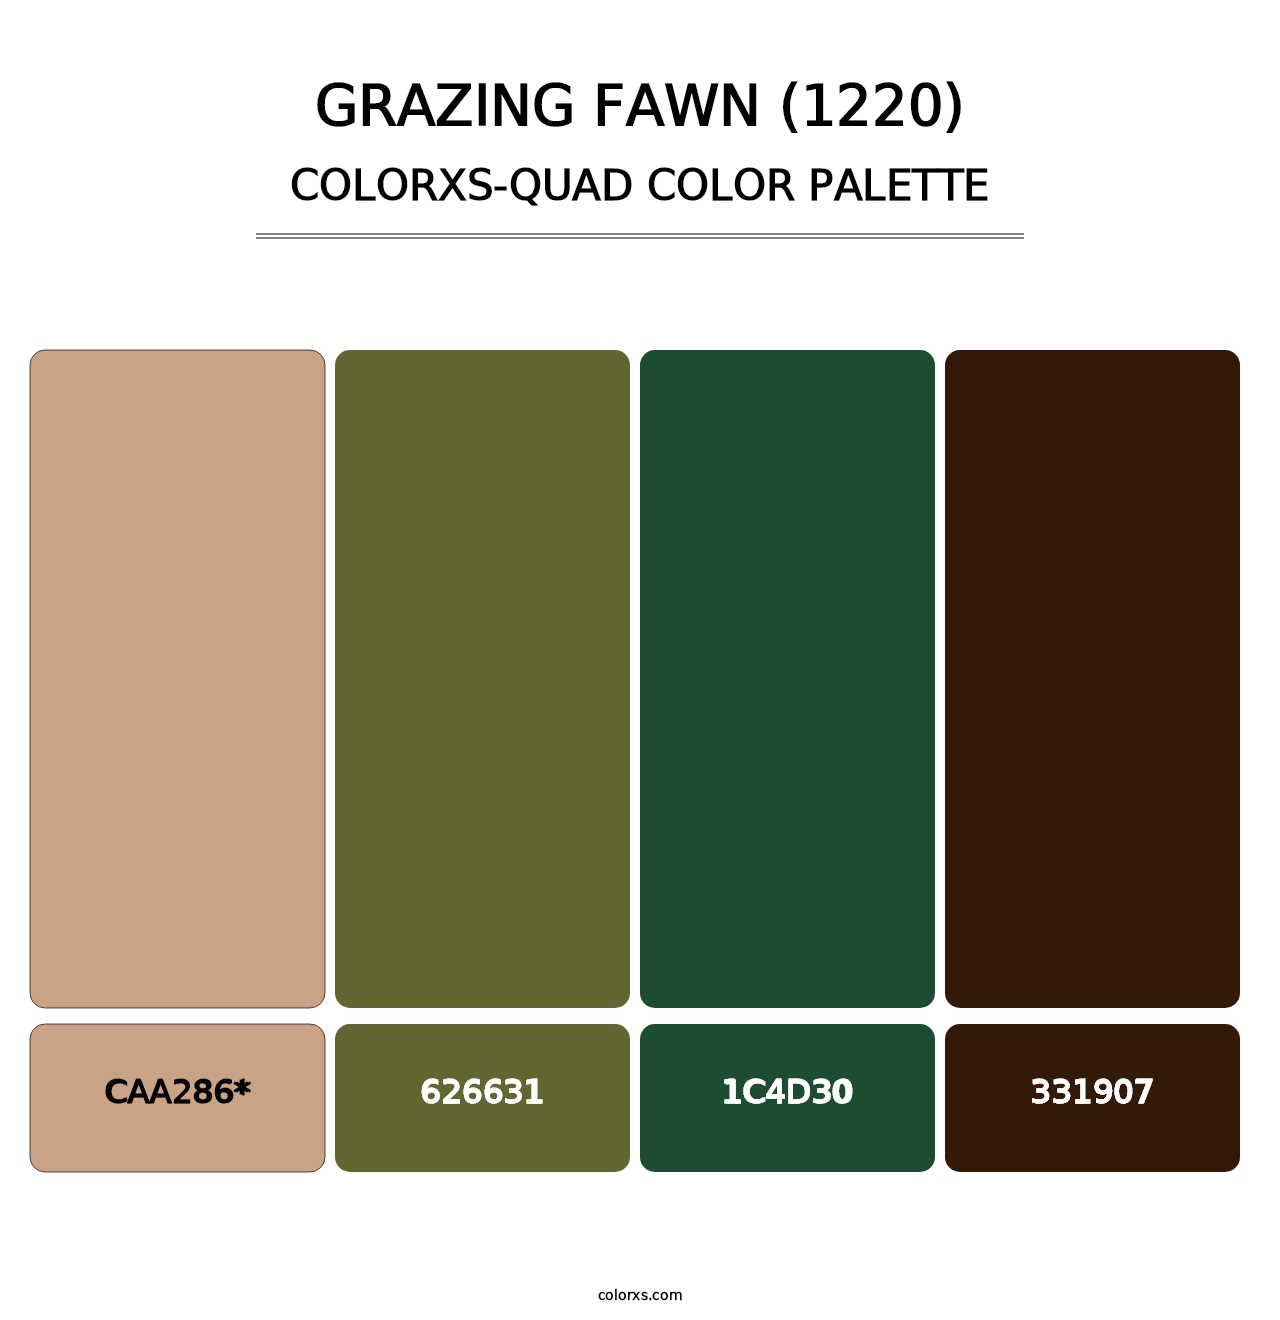 Grazing Fawn (1220) - Colorxs Quad Palette